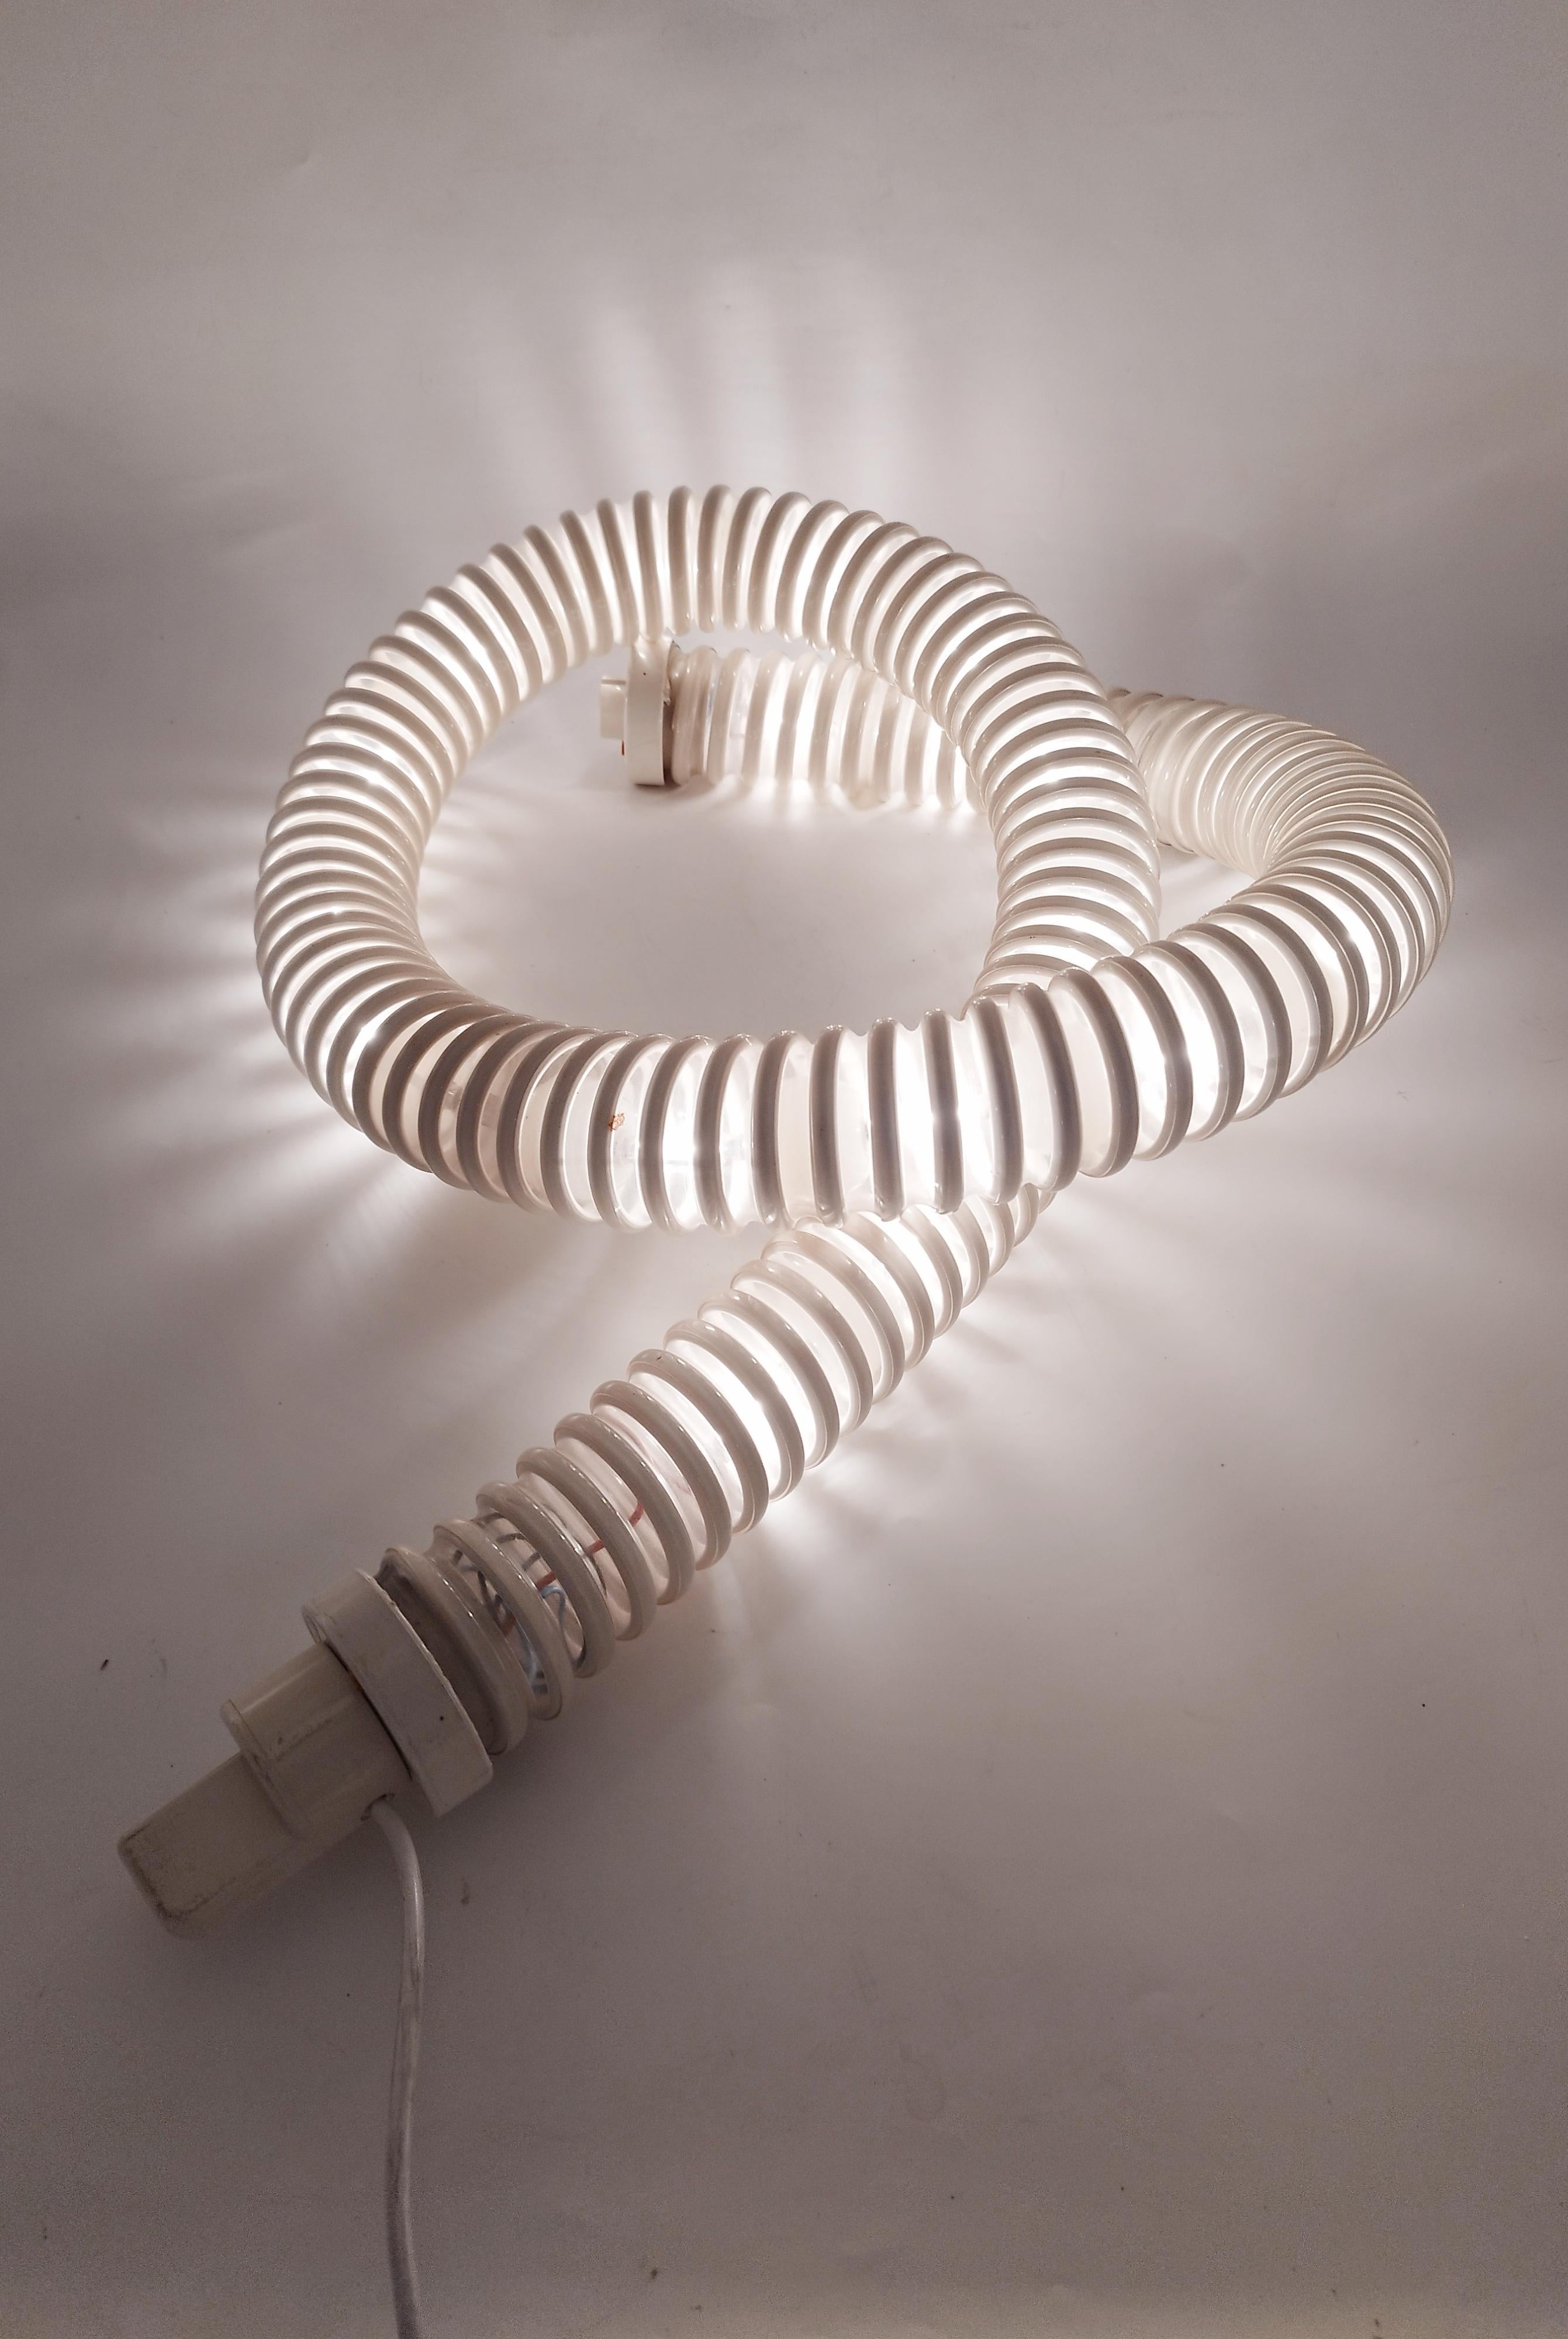 Diese einzigartige Tischleuchte wurde in den 1970er Jahren von Livio Castiglioni und Gianfranco Frattini für die Marke Artemide entworfen und ging sofort in die Geschichte des italienischen und internationalen Designs ein. Die Tisch- oder Stehlampe